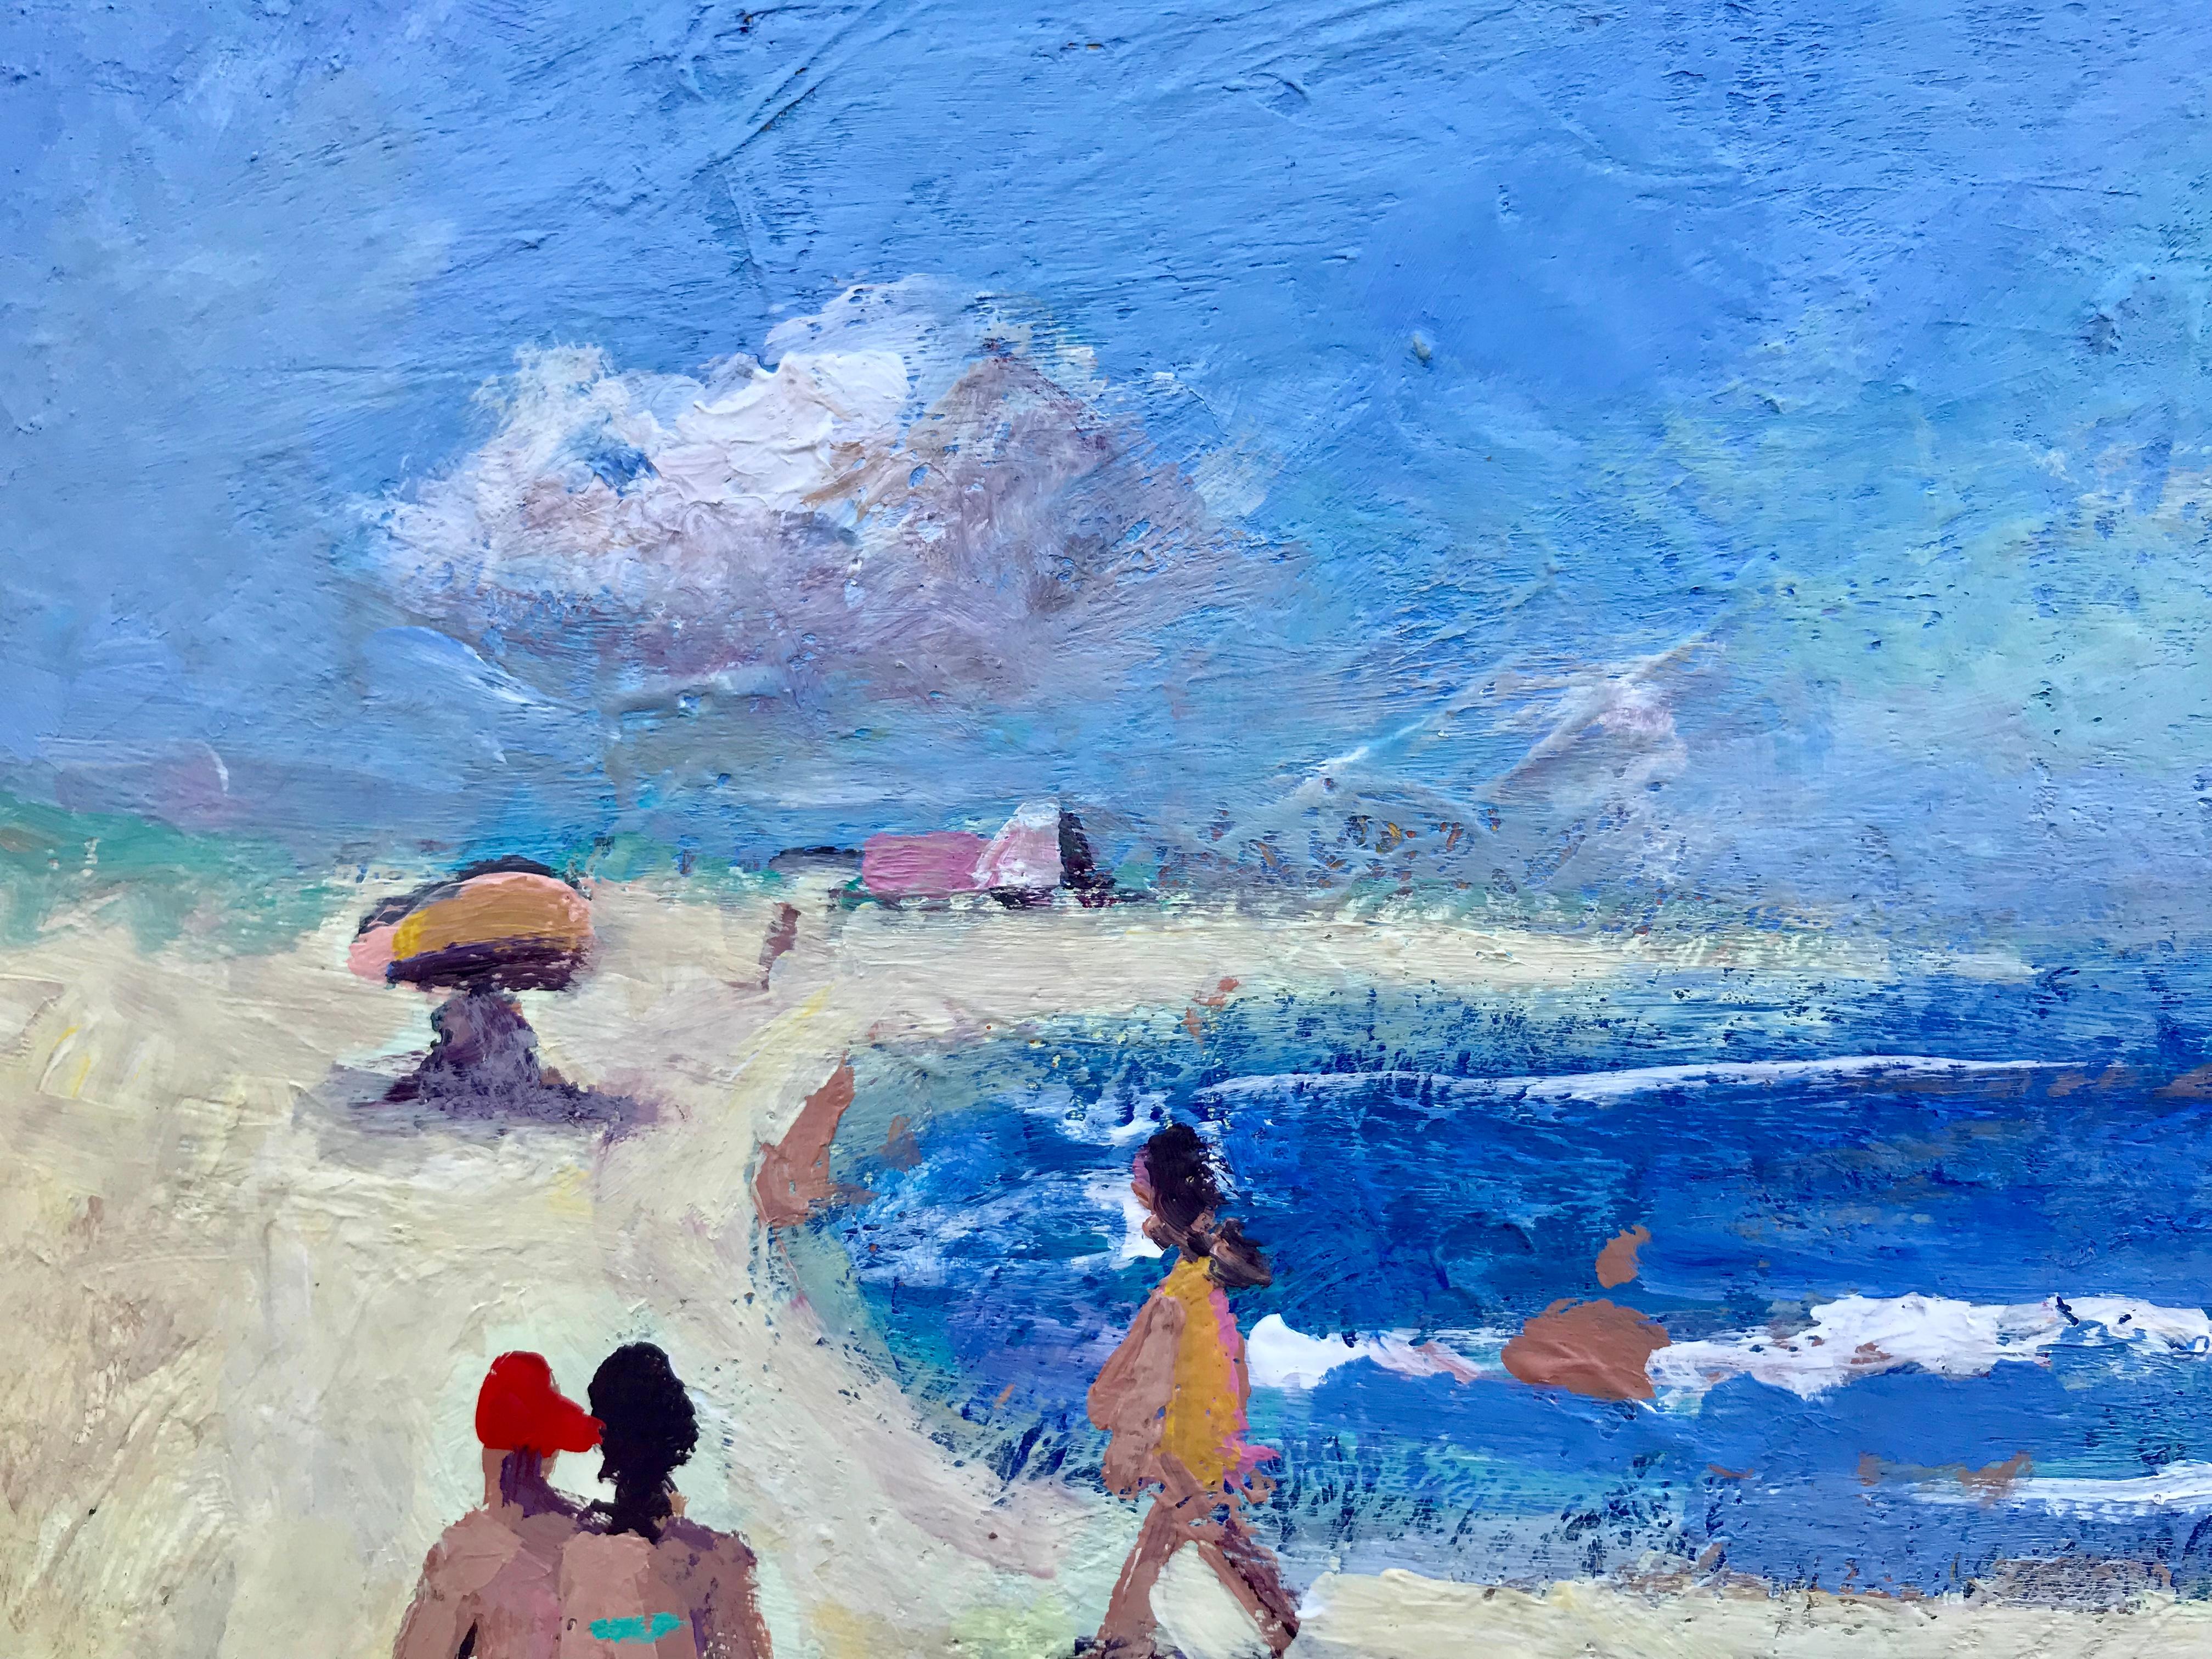 Journée de plage - Bleu Figurative Painting par John Crimmins